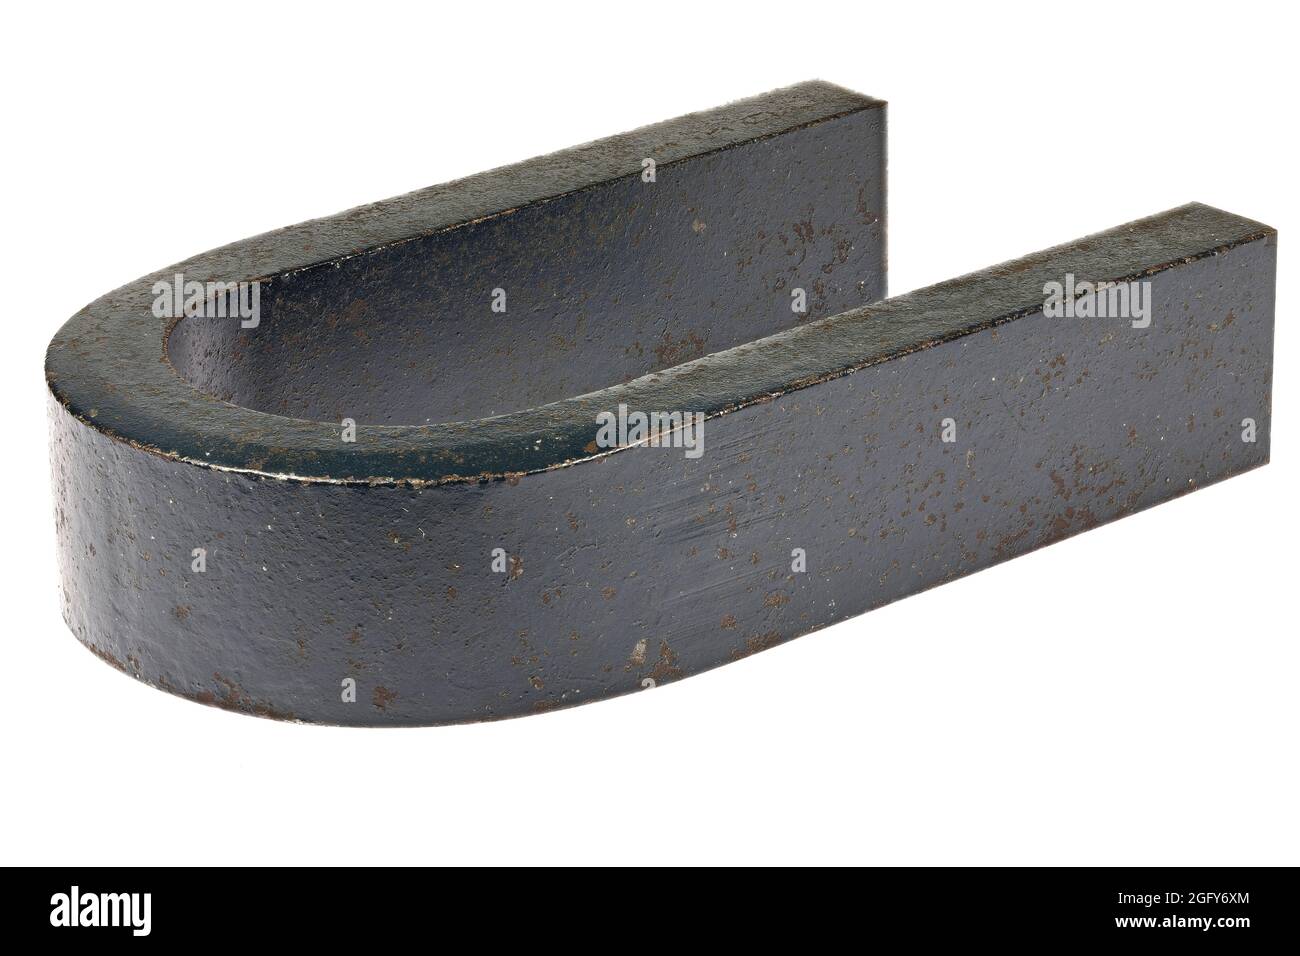 vintage horseshoe magnet isolated on white background Stock Photo